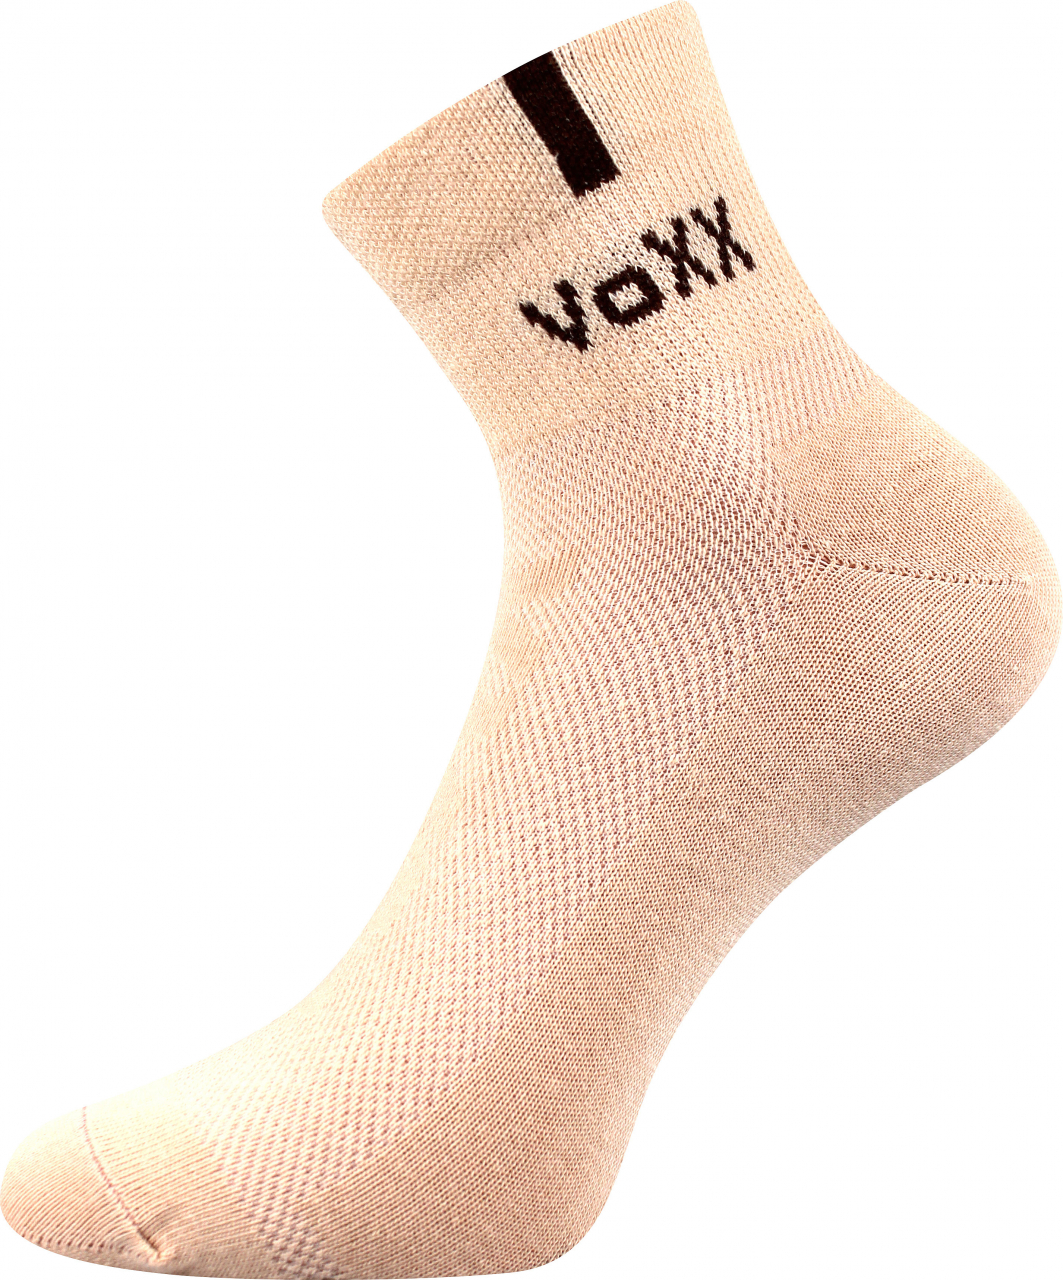 Ponožky s elastanem Voxx Fredy - béžové, 43-46